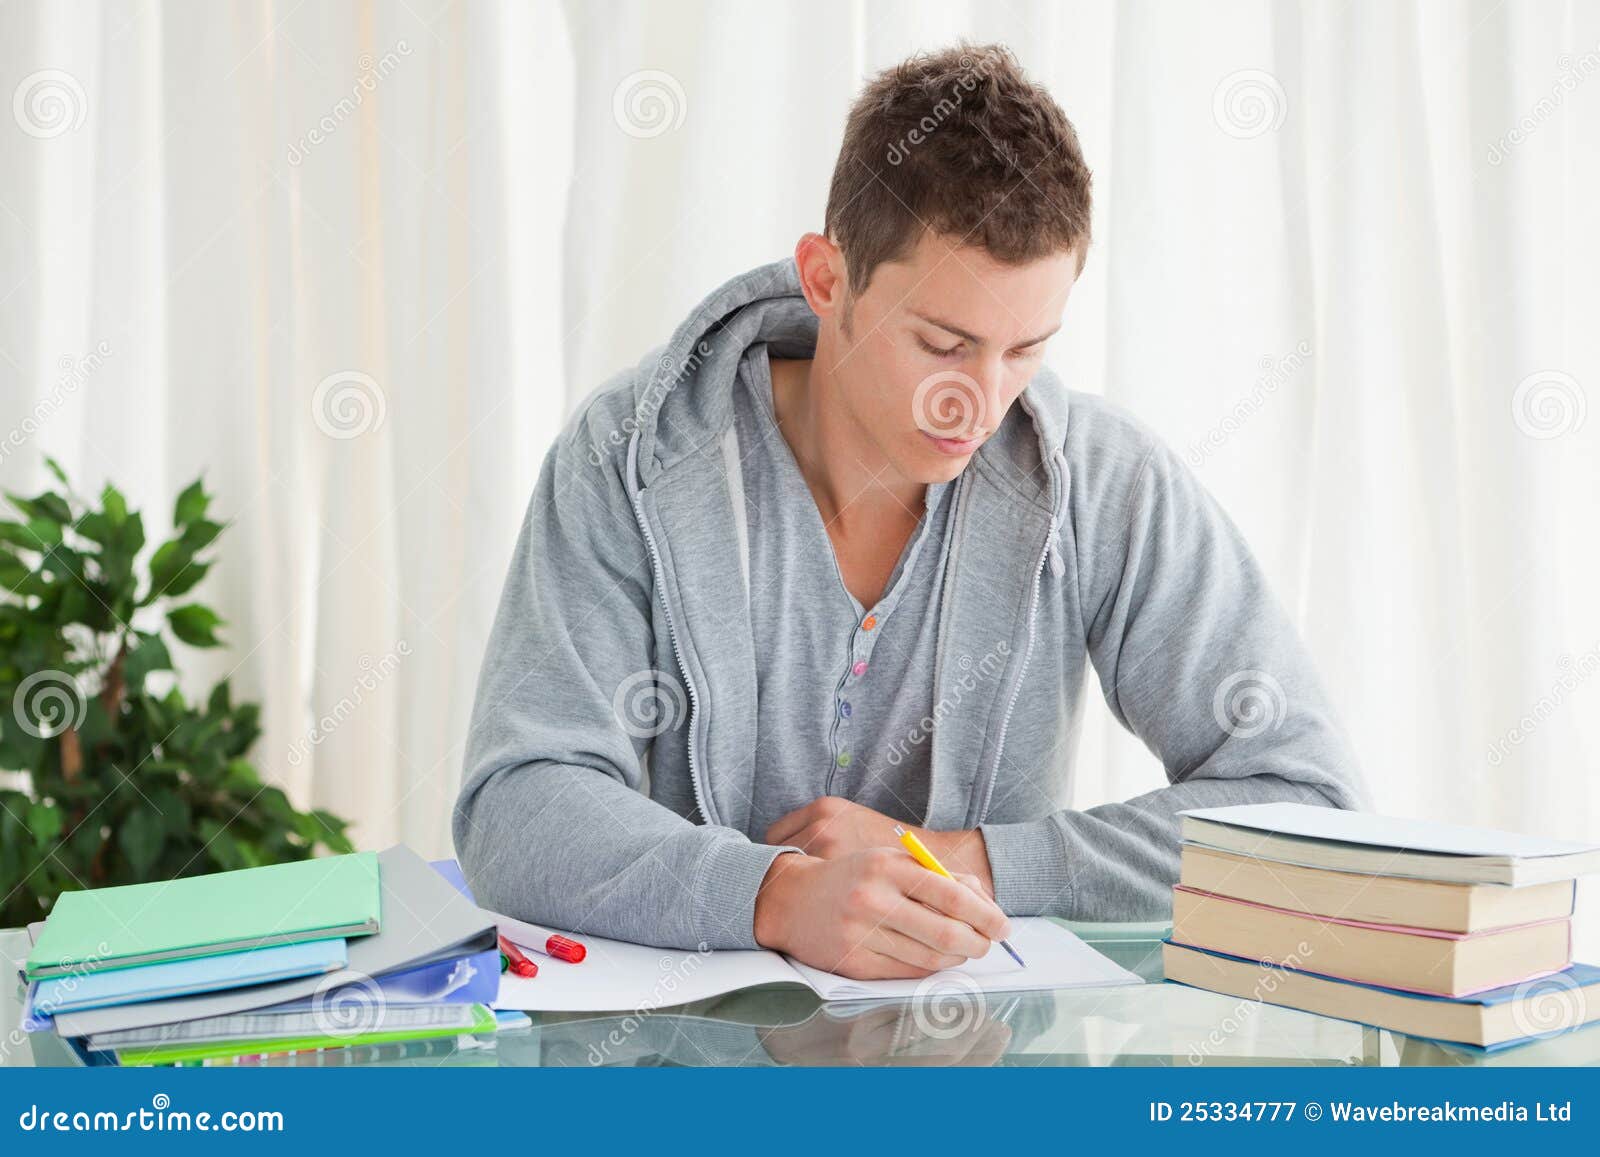 homework man